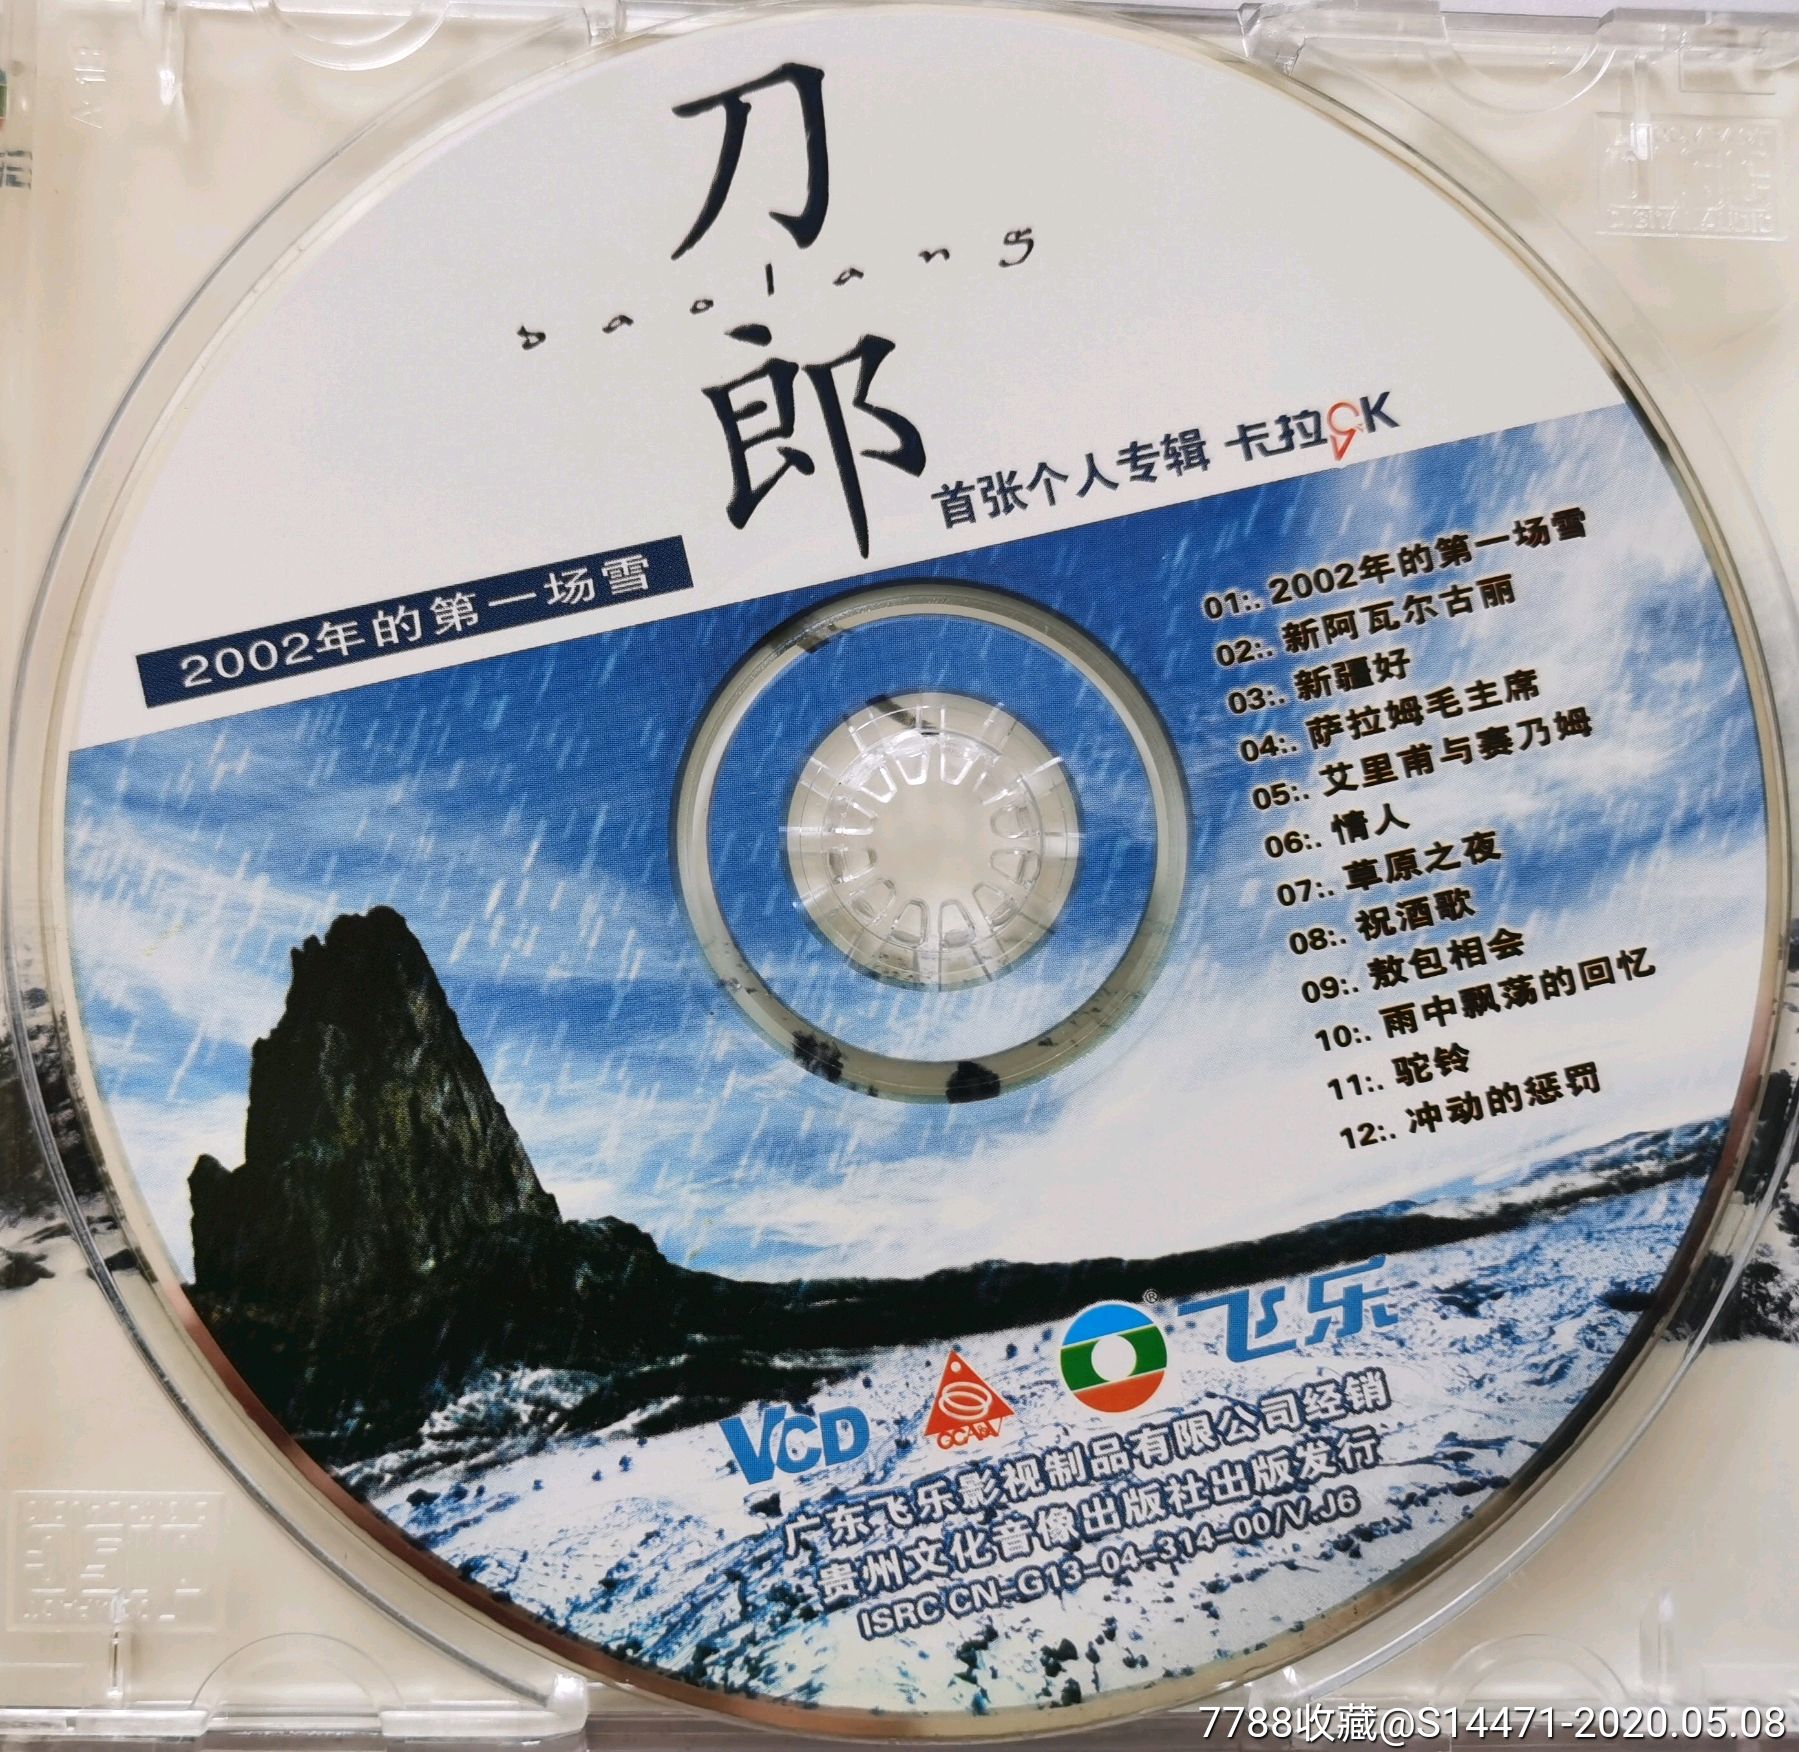 《2002年的第一场雪》(刀郎)_音乐cd_大同连环画收藏